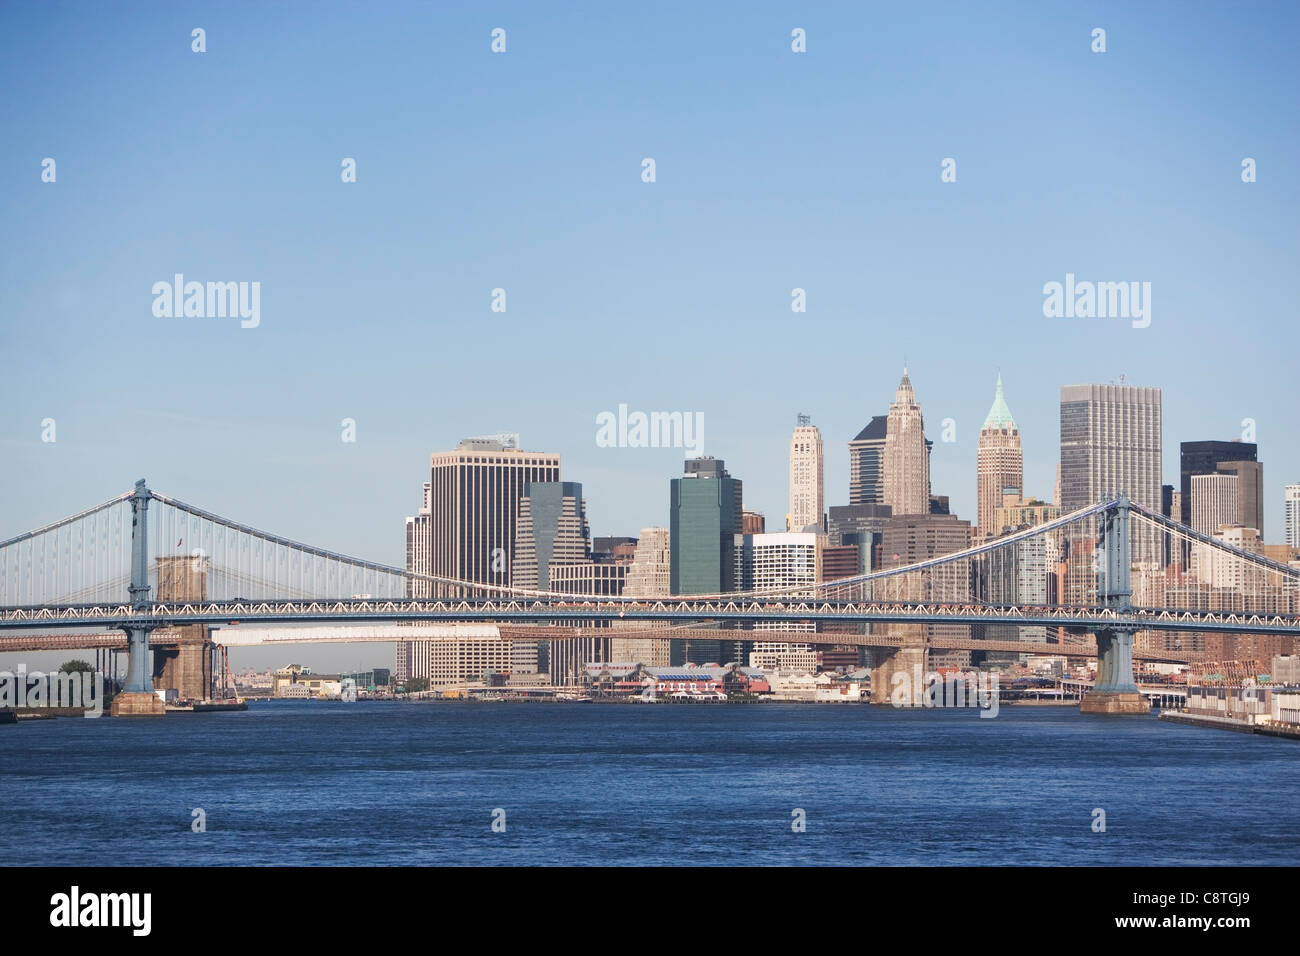 USA, New York State, New York City, Manhattan, Williamsburg Bridge Stock Photo